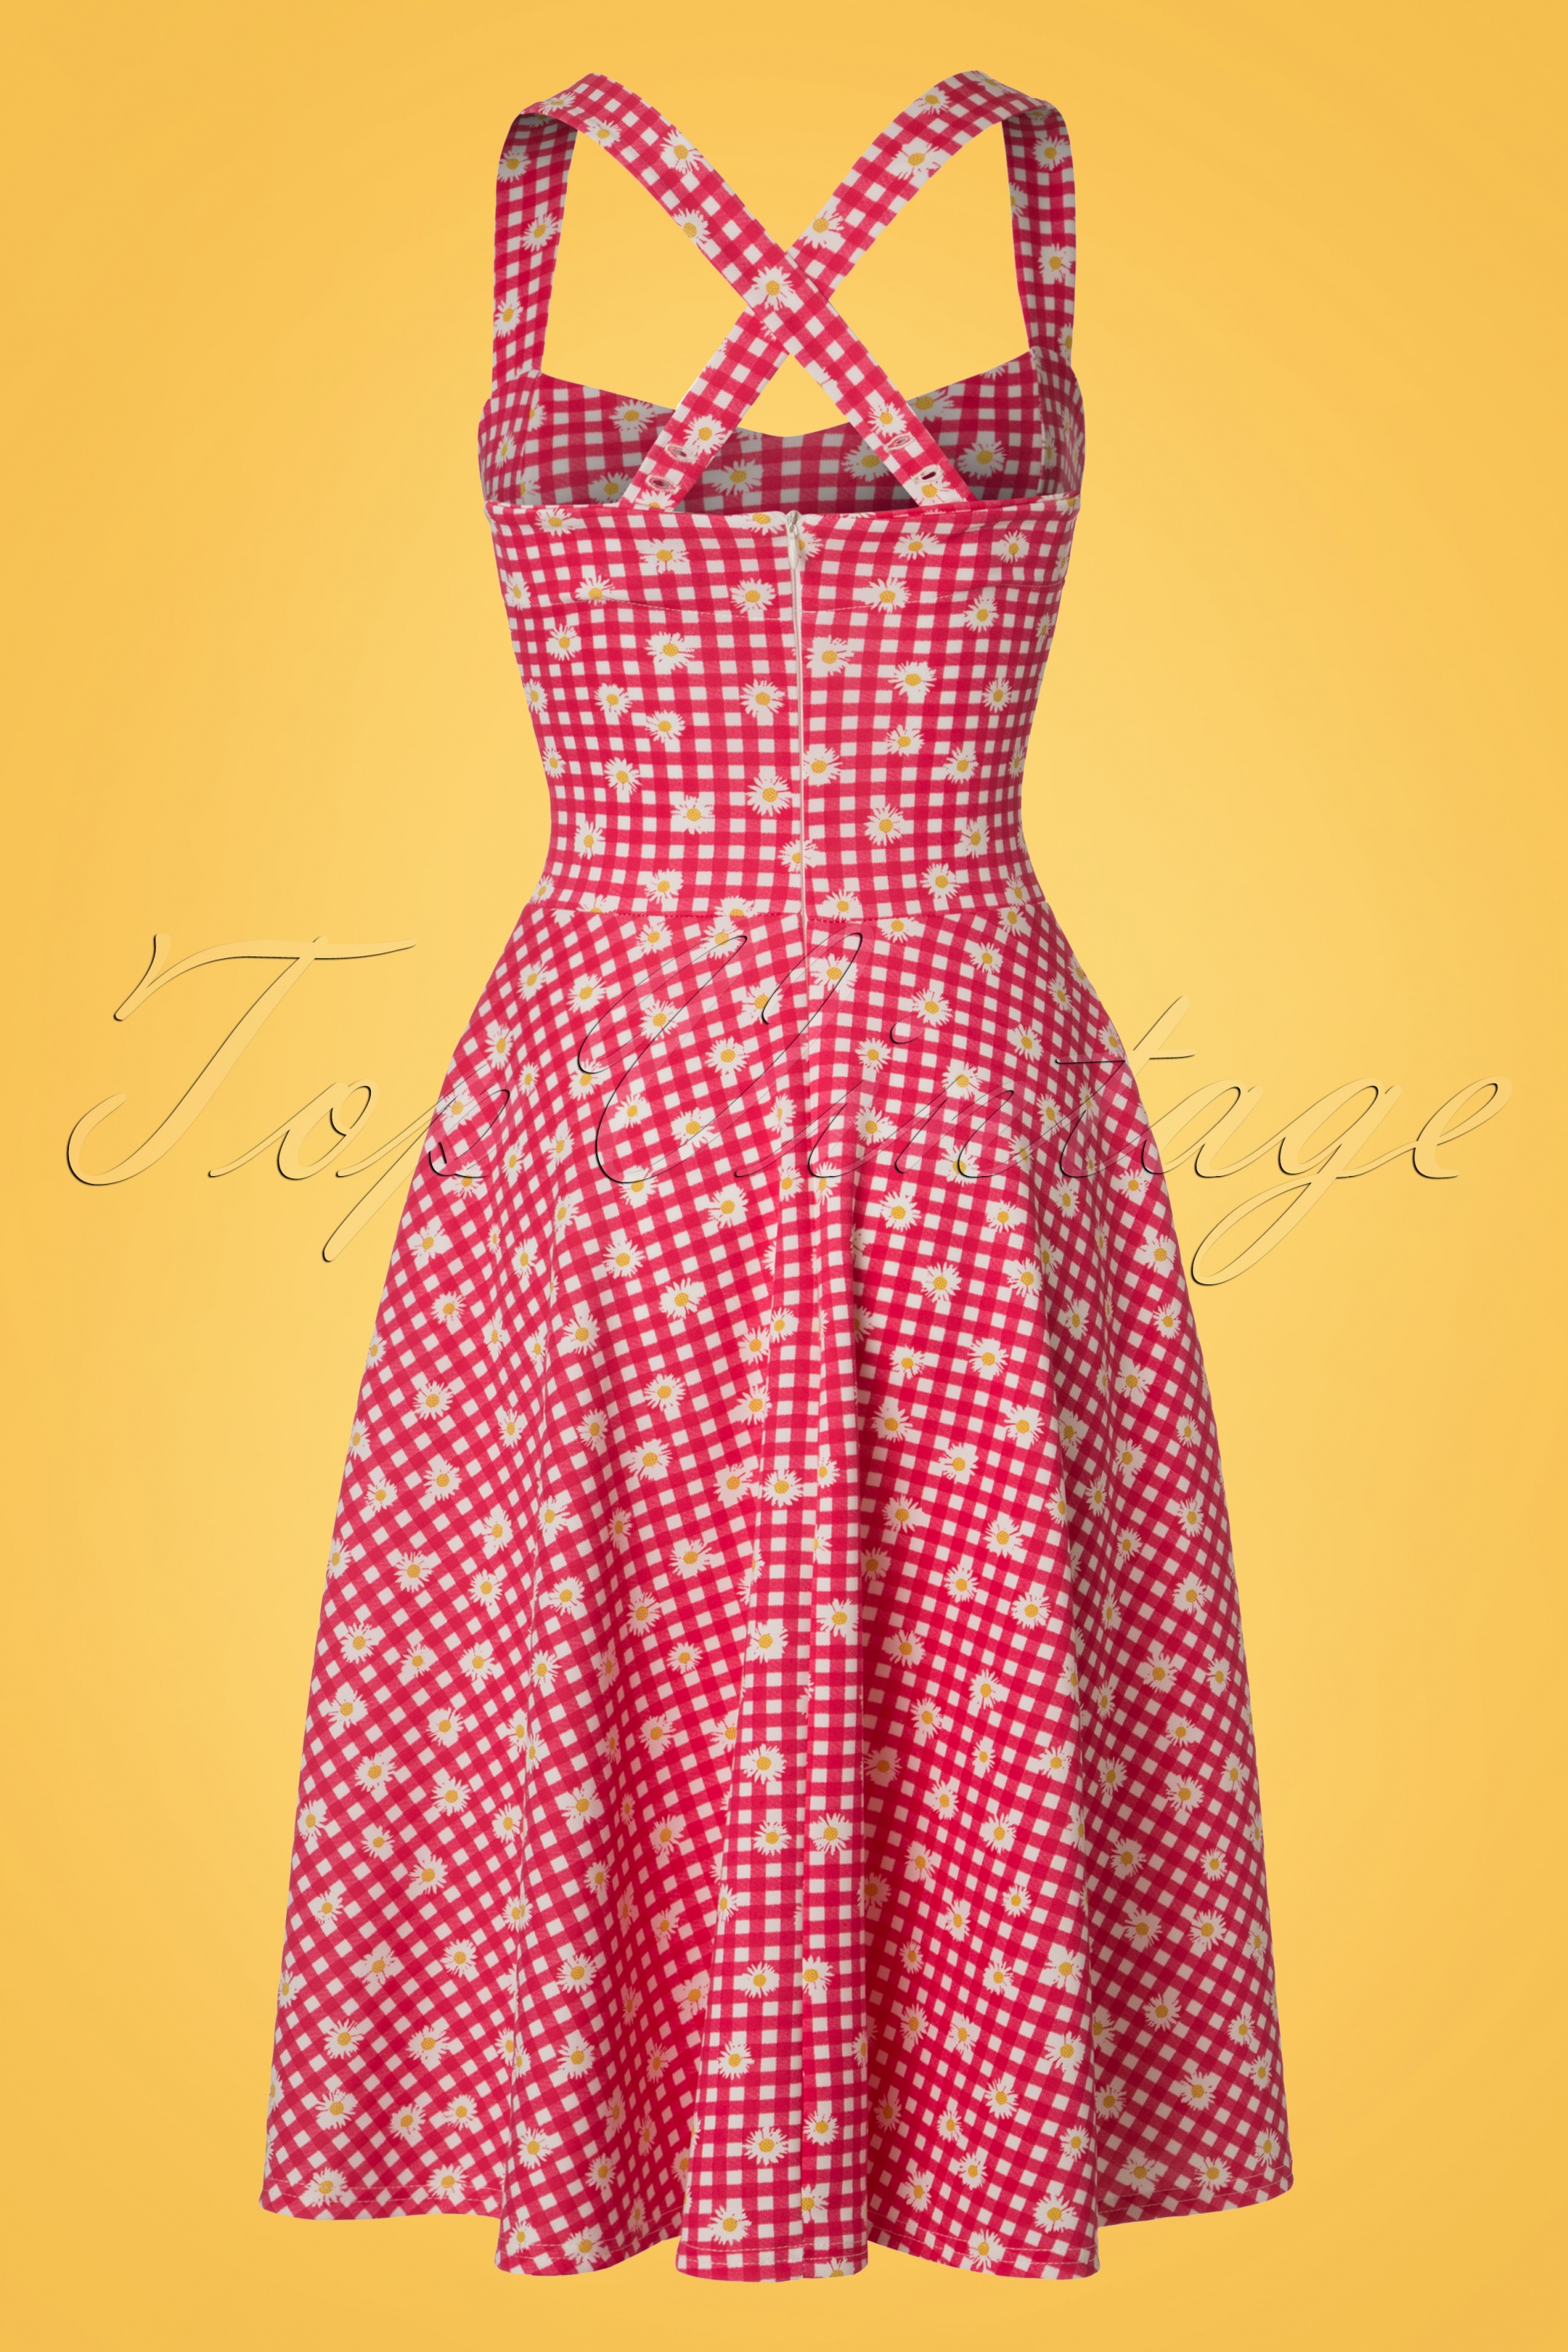 Vintage Chic for Topvintage - Judith geruite swingjurk in rood en wit 5